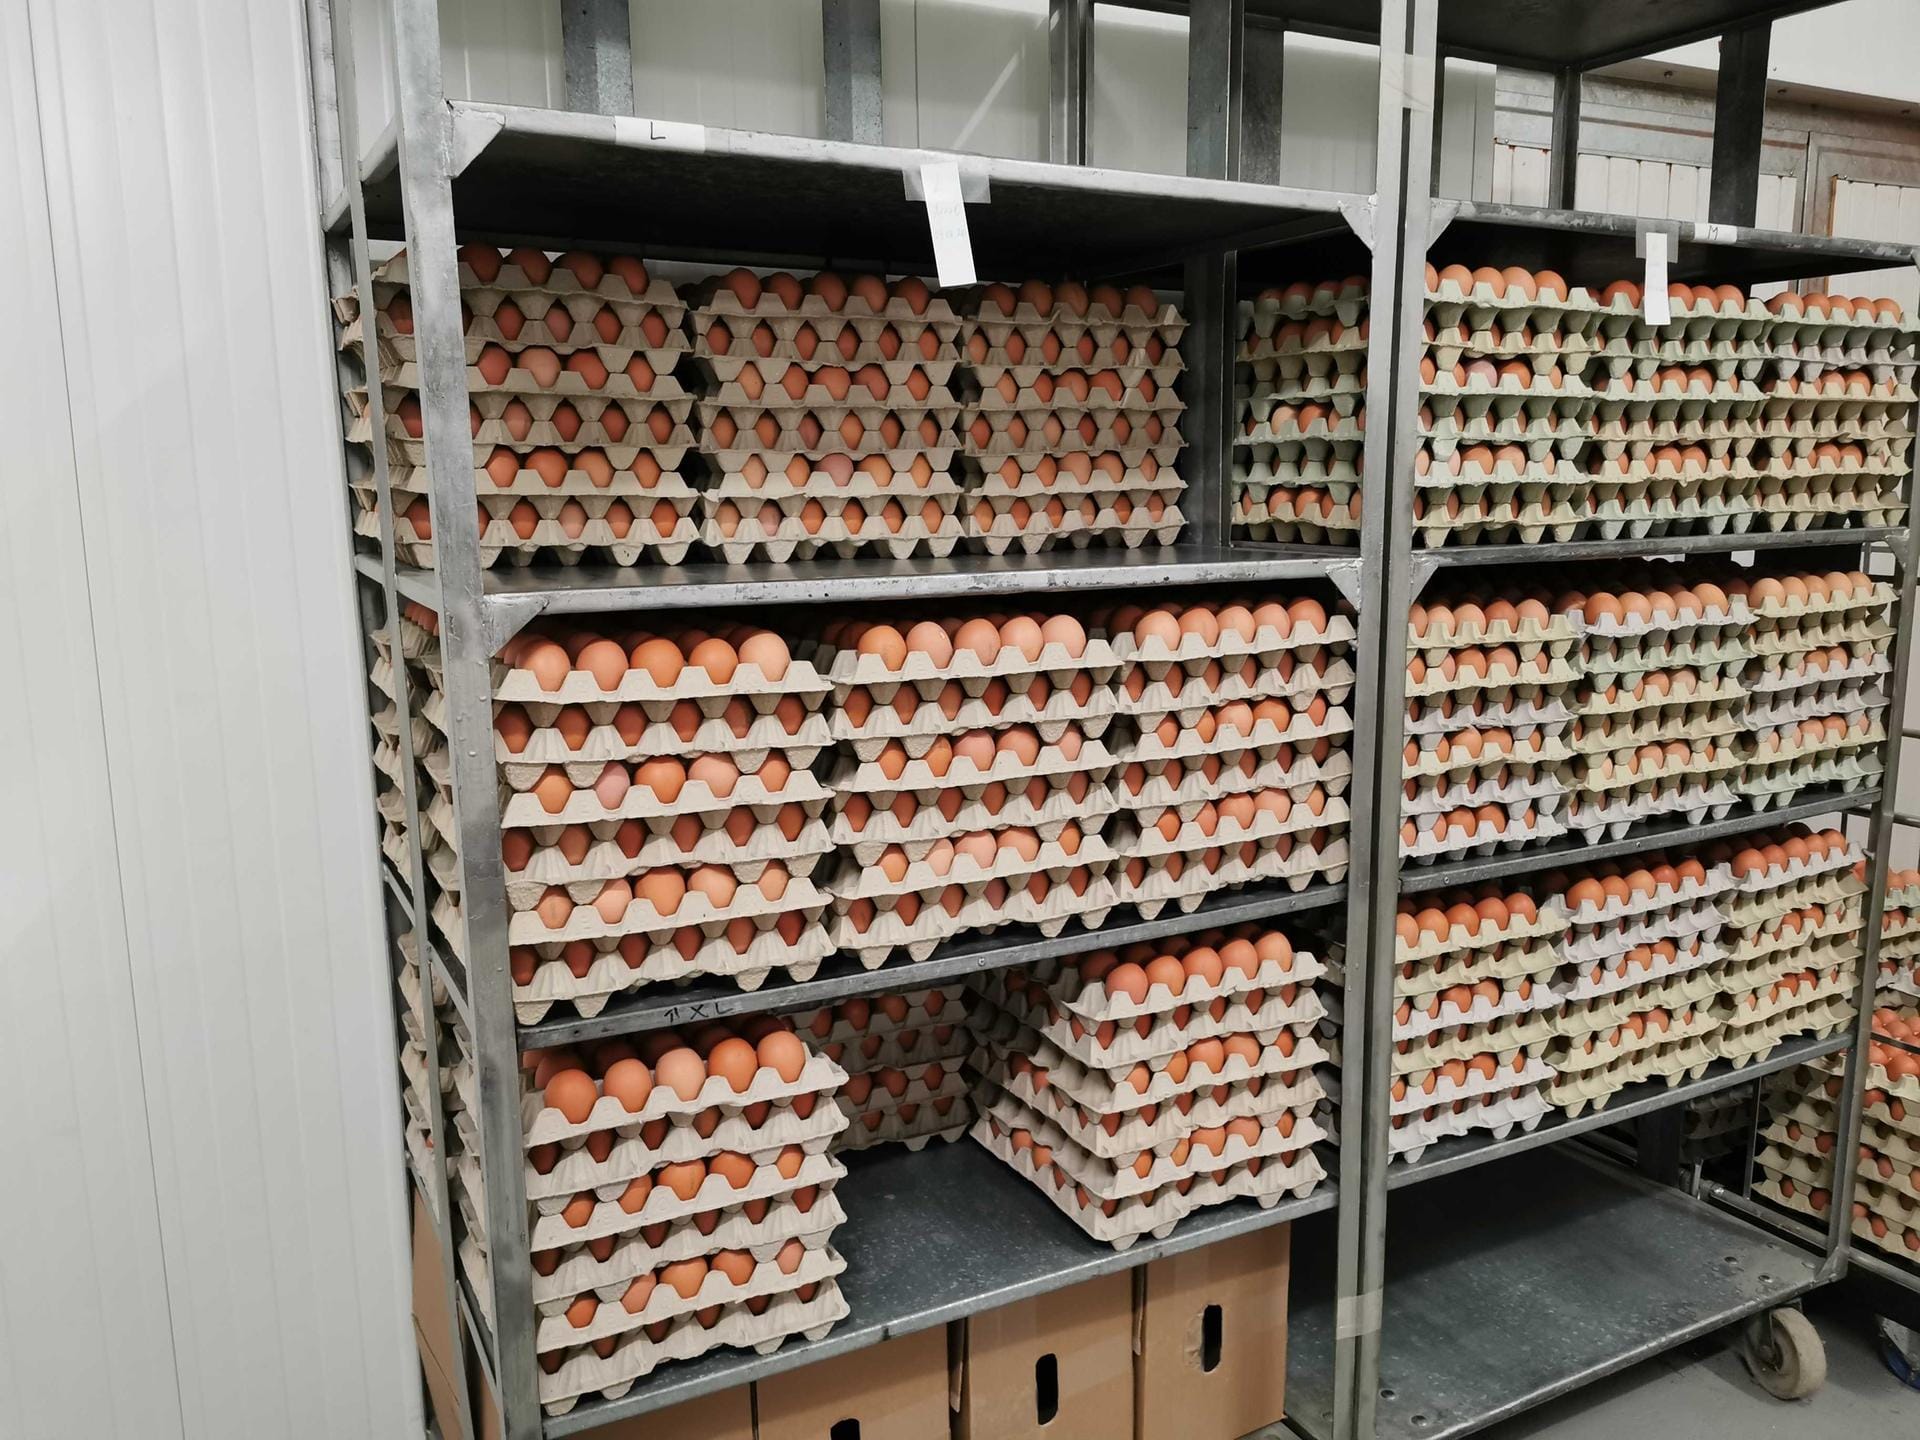 Verpackte Bioeier: Am Ende des Tages sind alle Eier einsortiert und können nun auf dem Wochenmarkt, im Hofladen oder in Bioläden verkauft werden.